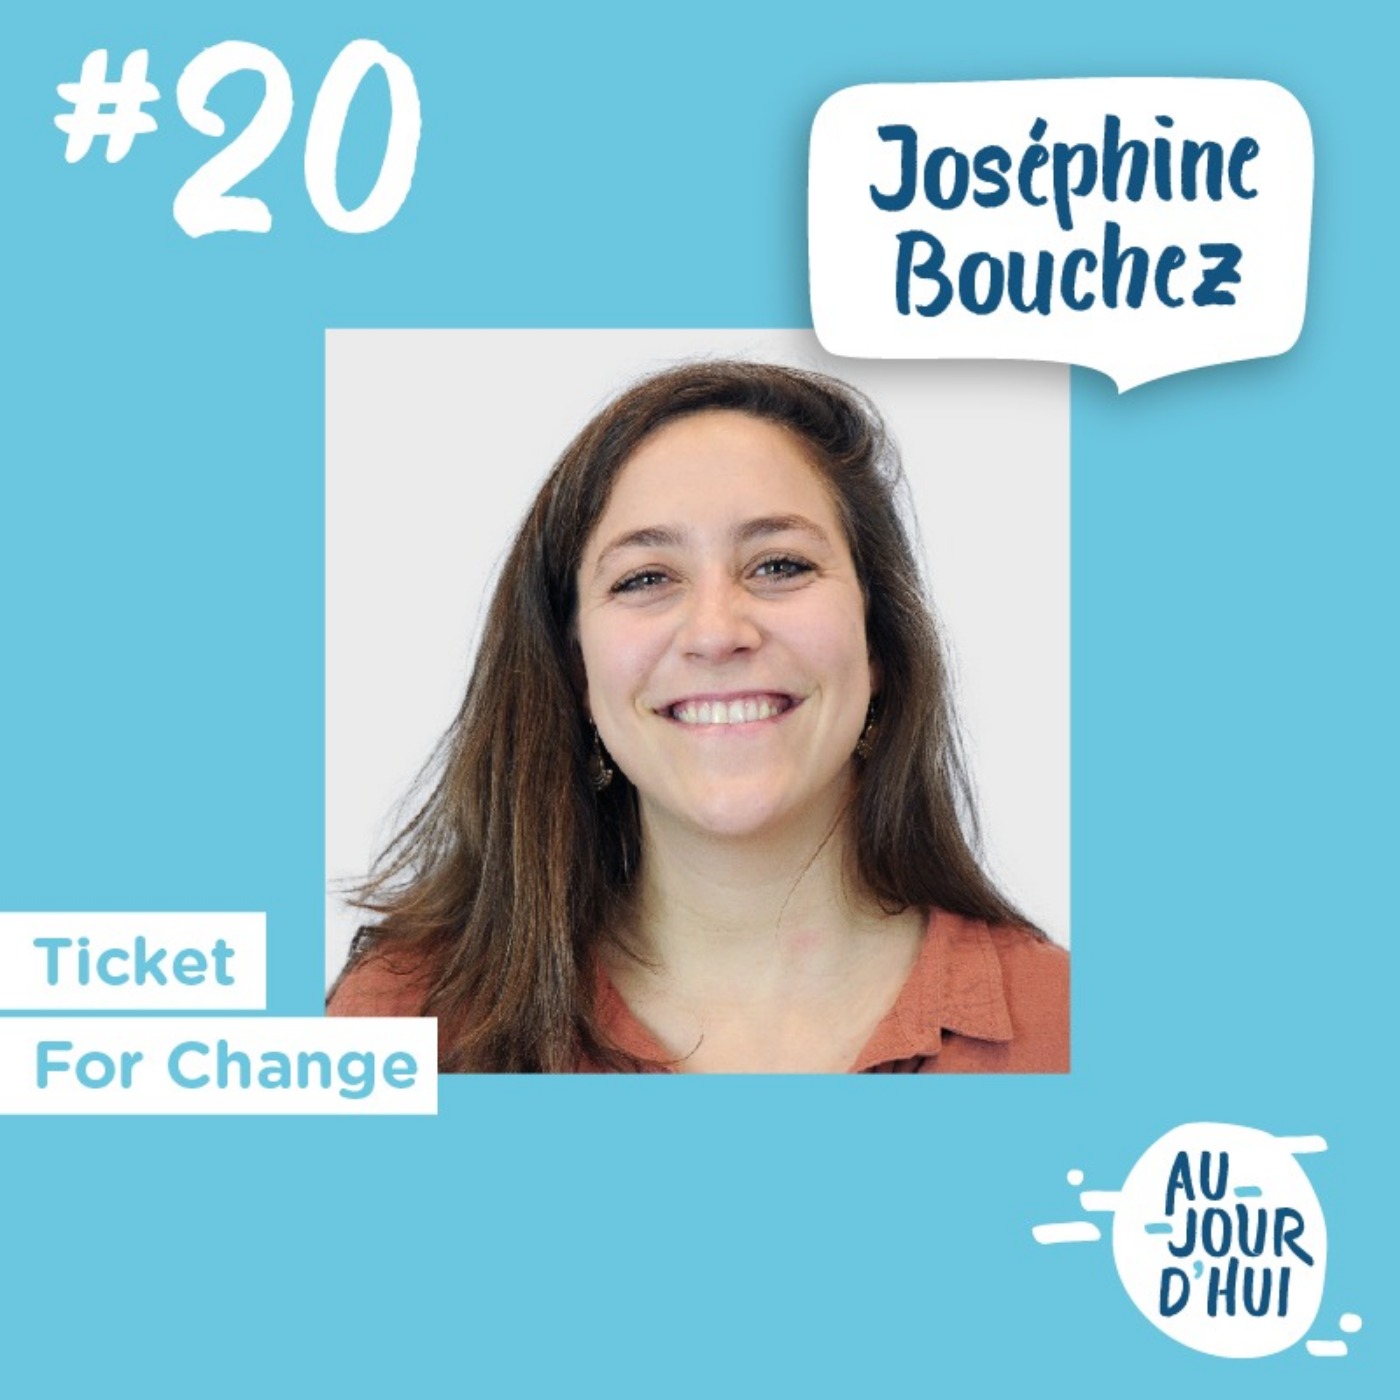 #20 Joséphine Bouchez (Ticket For Change) : “Notre vie professionnelle est un levier incroyable pour résoudre les défis du XXIe siècle”